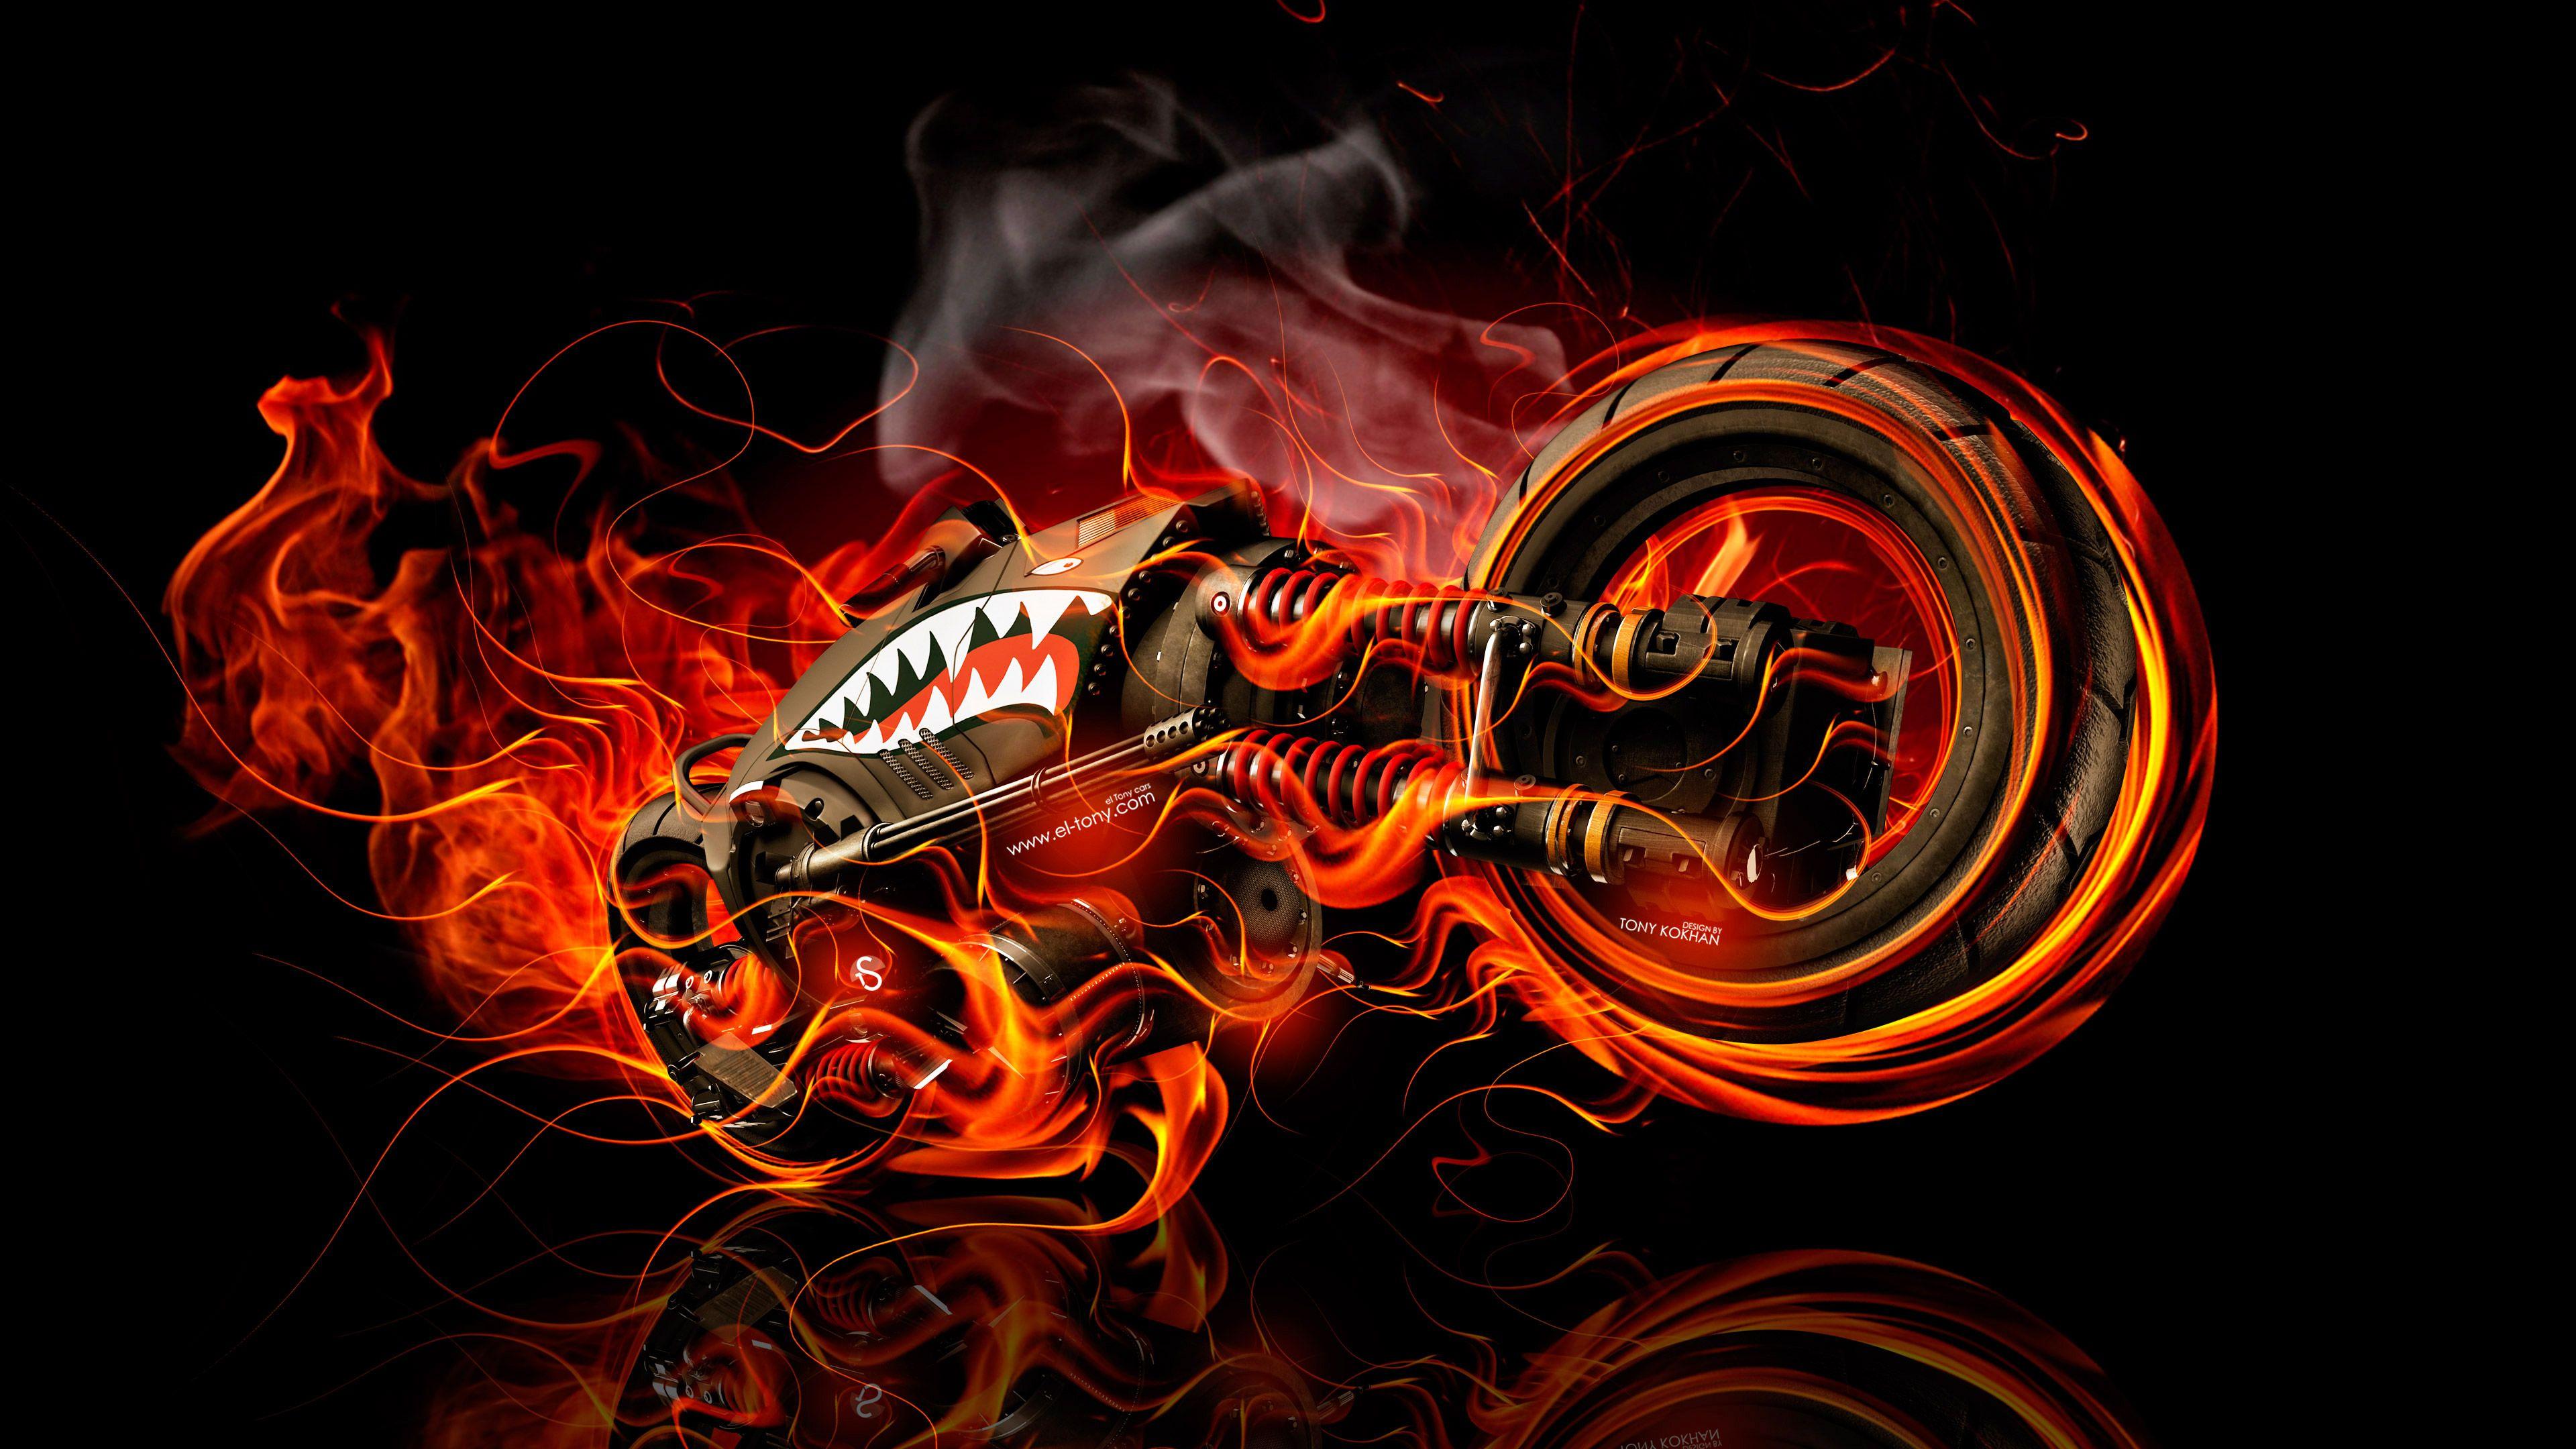 Moto Gun Super Fire Flame Abstract Bike 2016 Wallpaper 4K el Tony